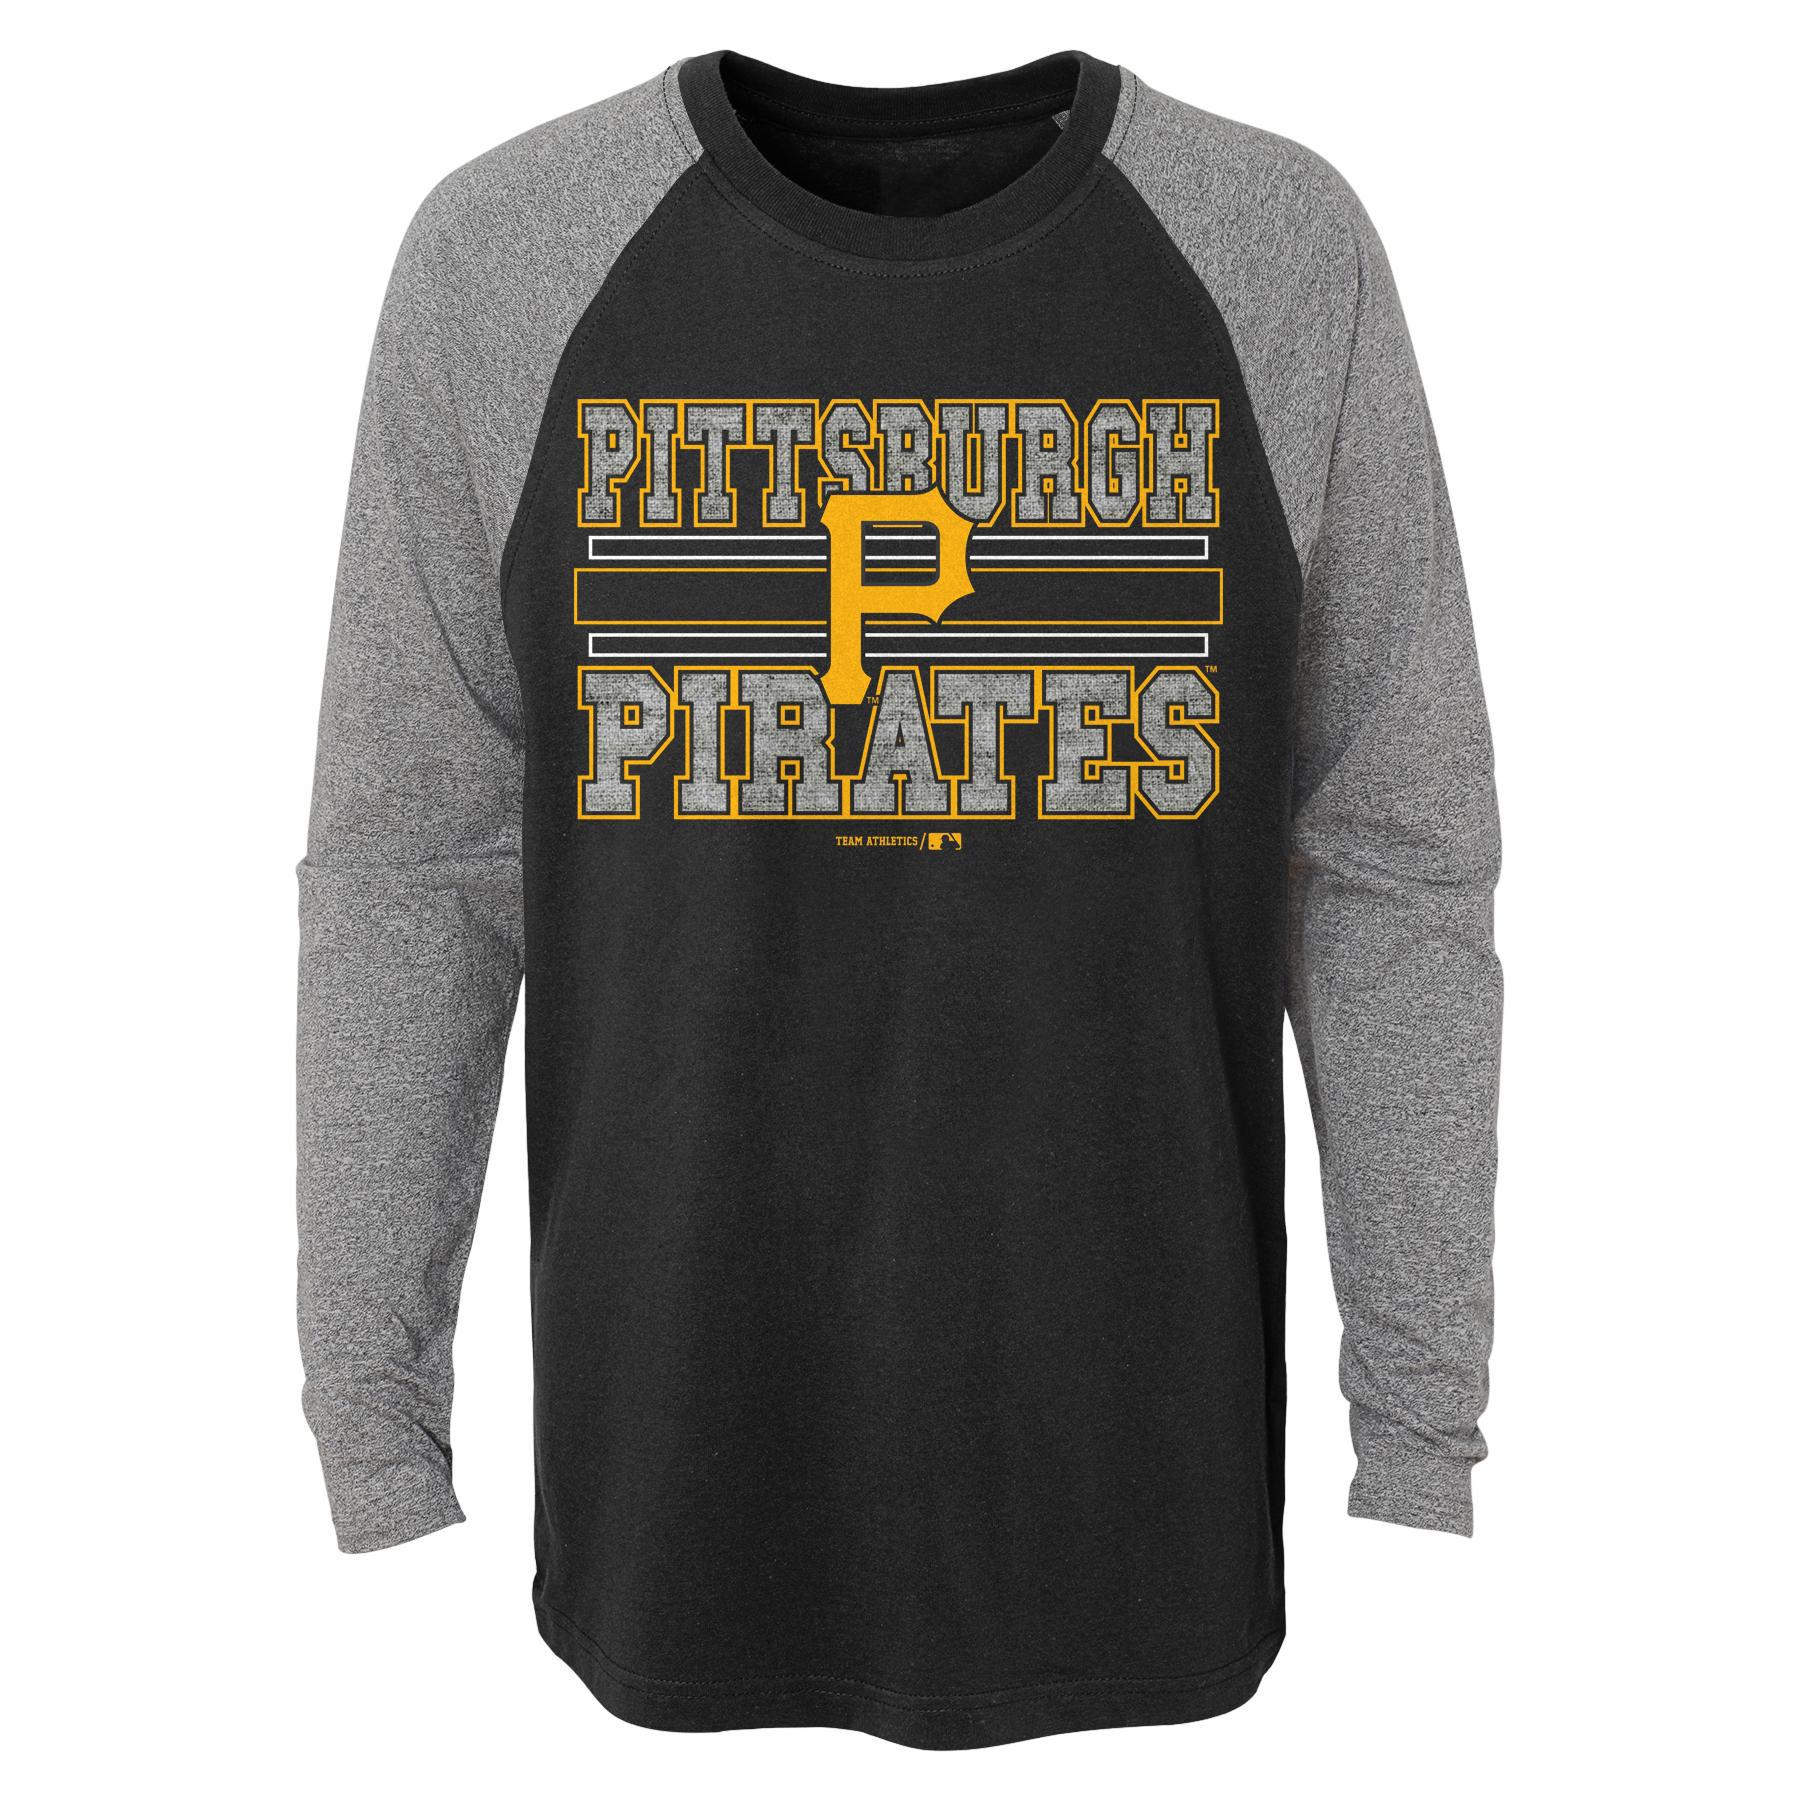 MLB Boys' Long-Sleeve T-Shirt - Pittsburgh Pirates